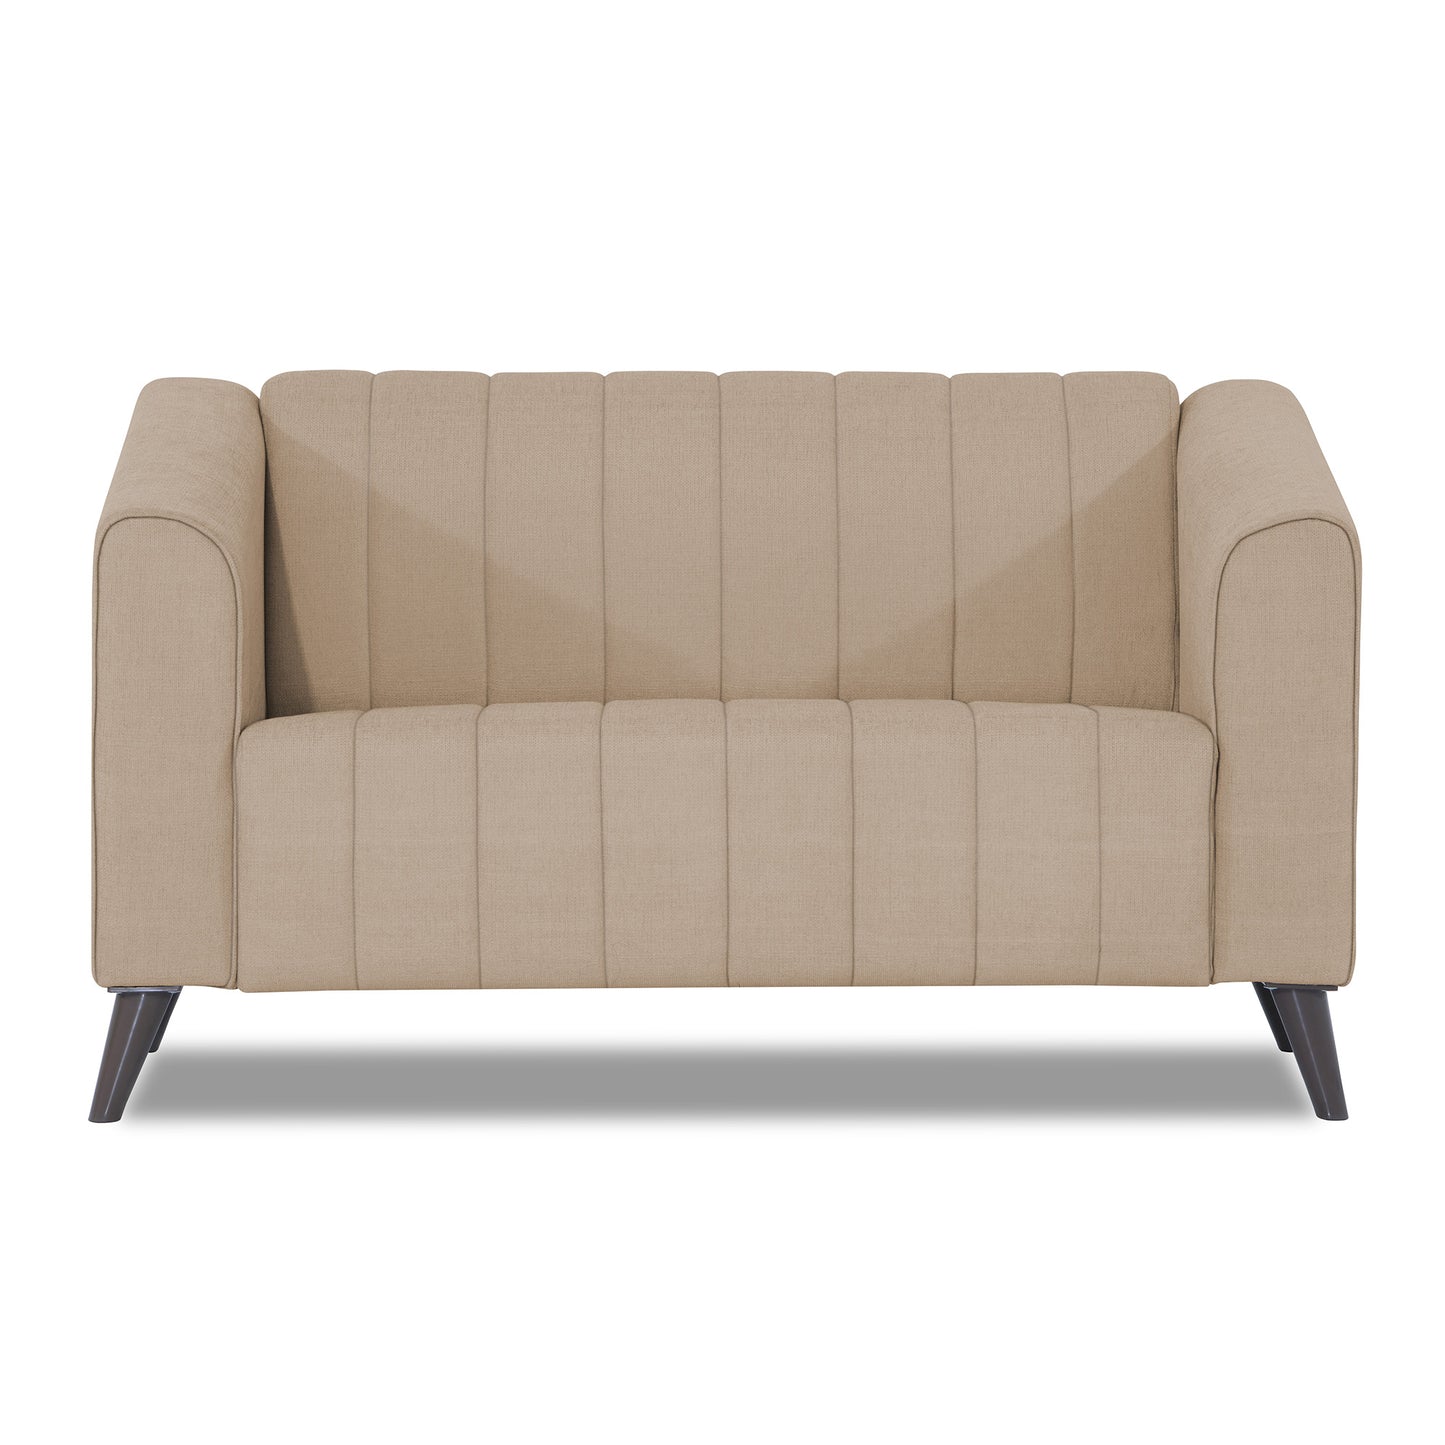 Adorn India Premium Laurel 2 Seater Sofa (Beige)